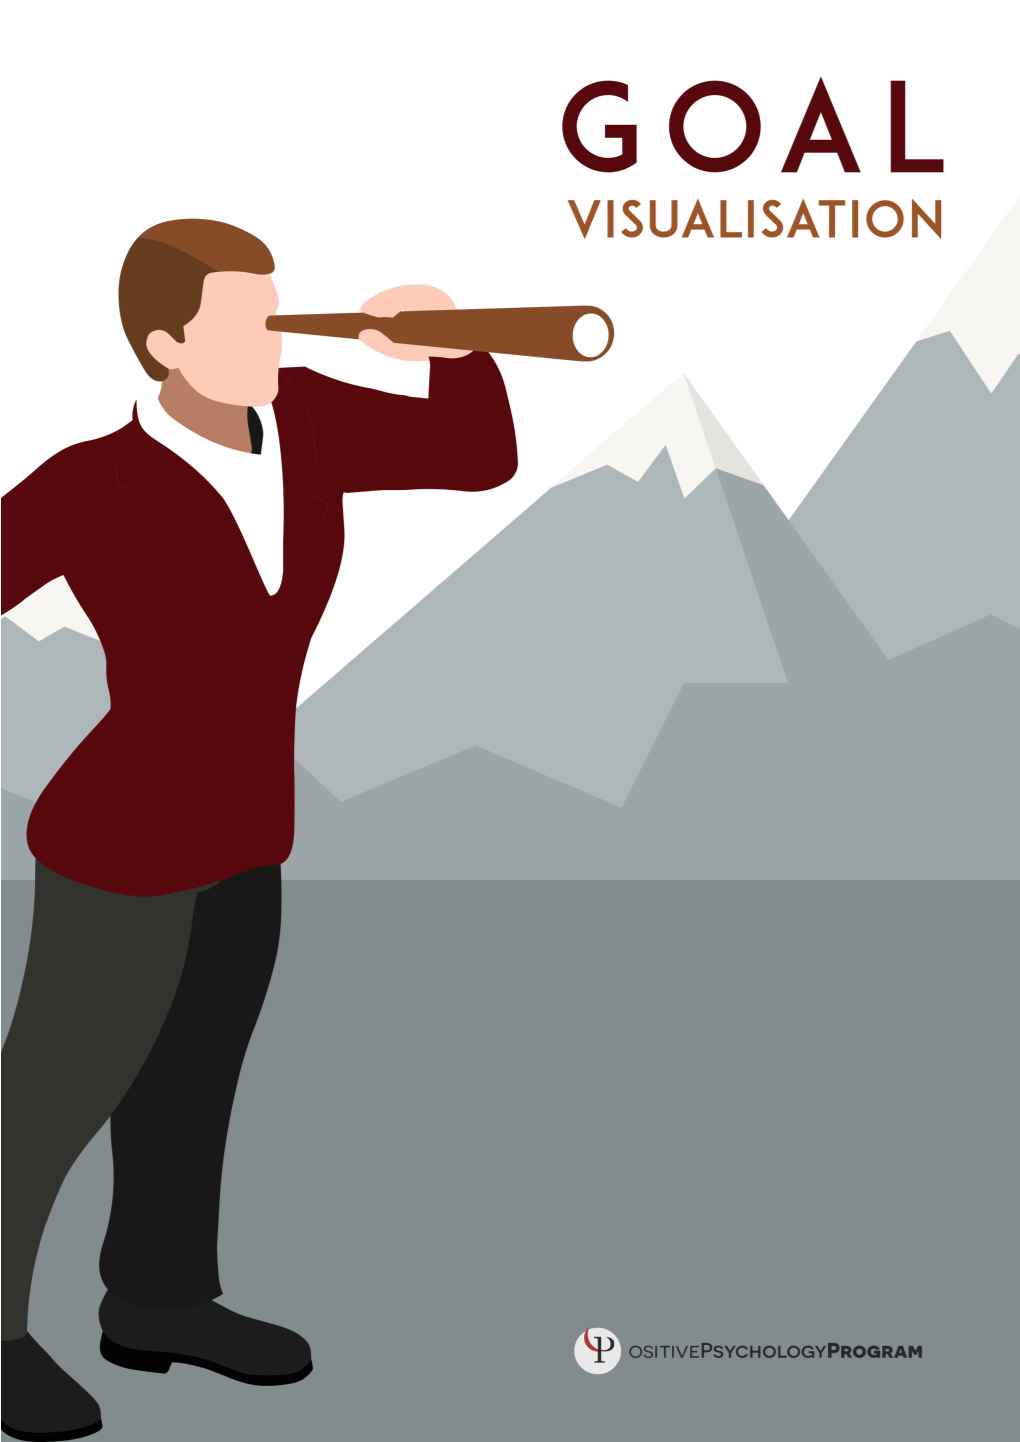 Goal-Visualisation-200Th-Toolkit-Tool